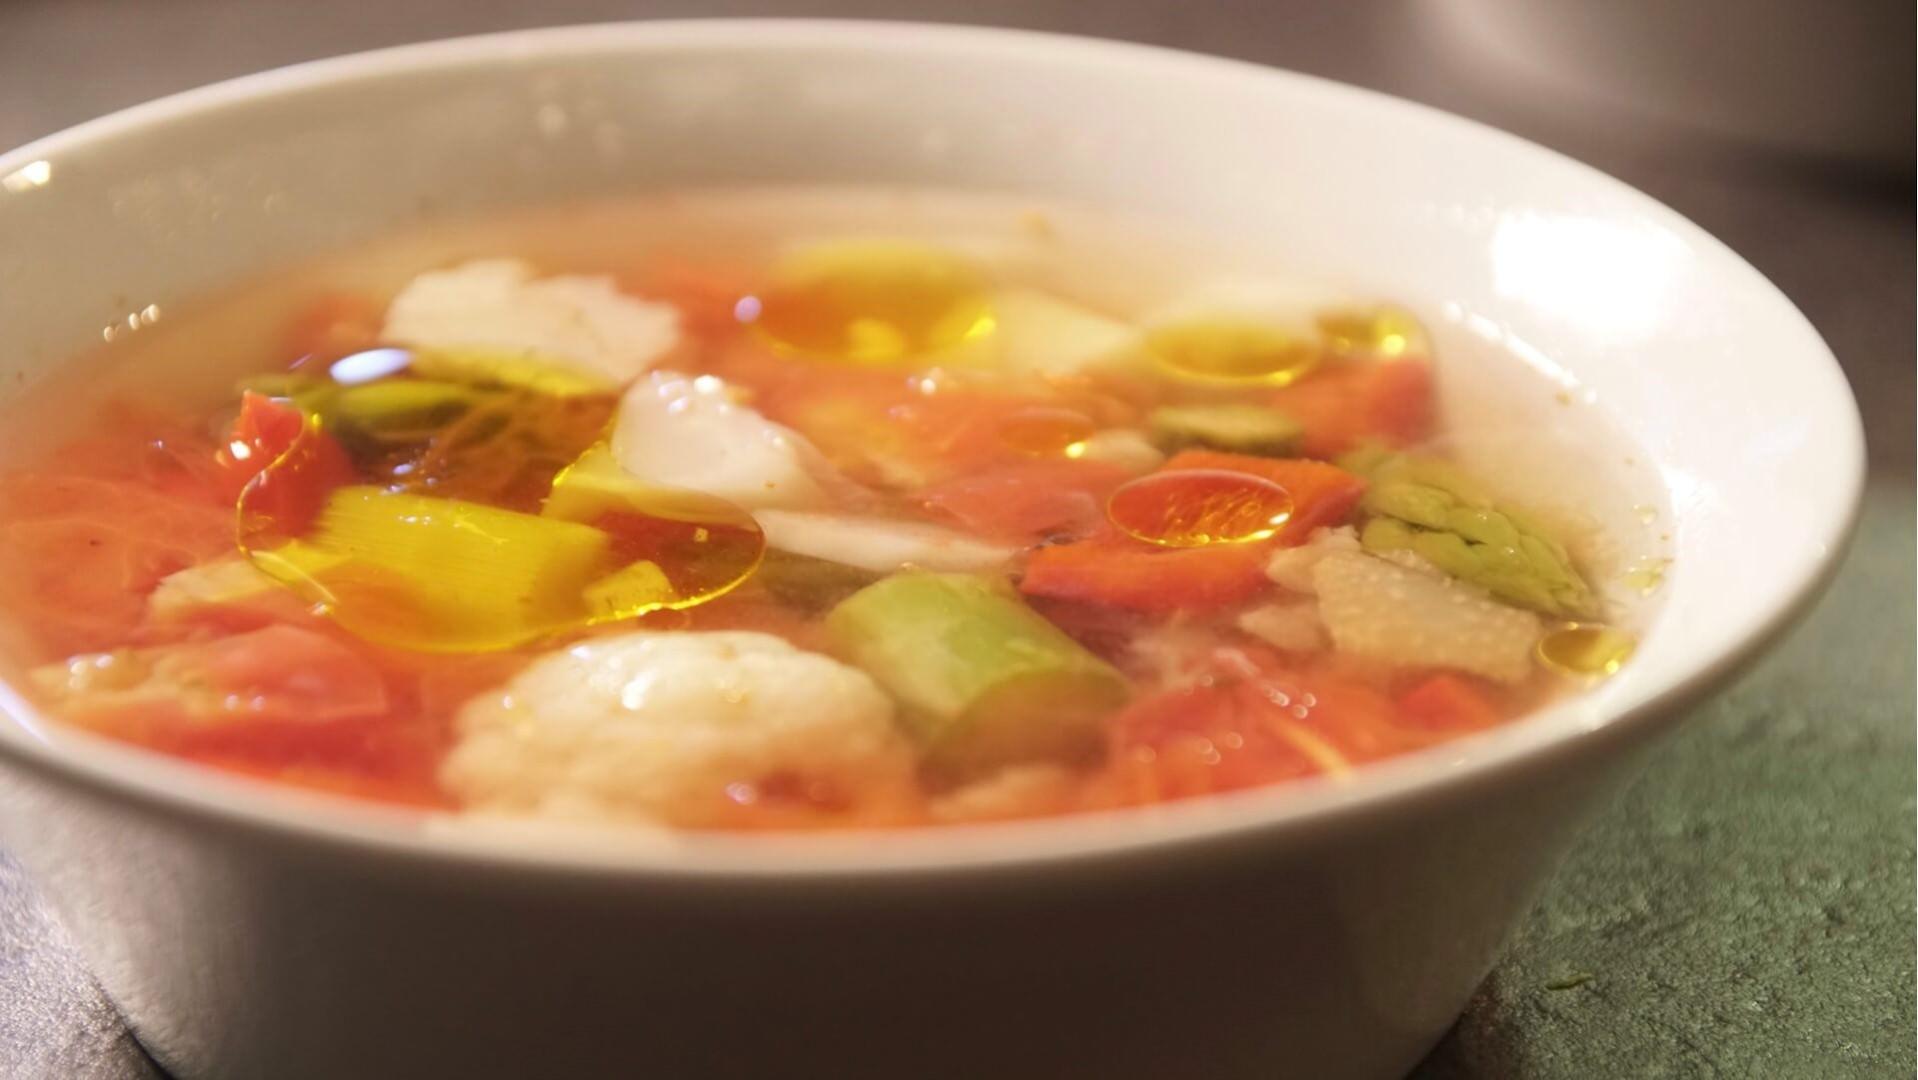 Sezonowa zupa ze świeżymi pomidorami bezglutenowa kuchnia wegańska Atelier Smaku